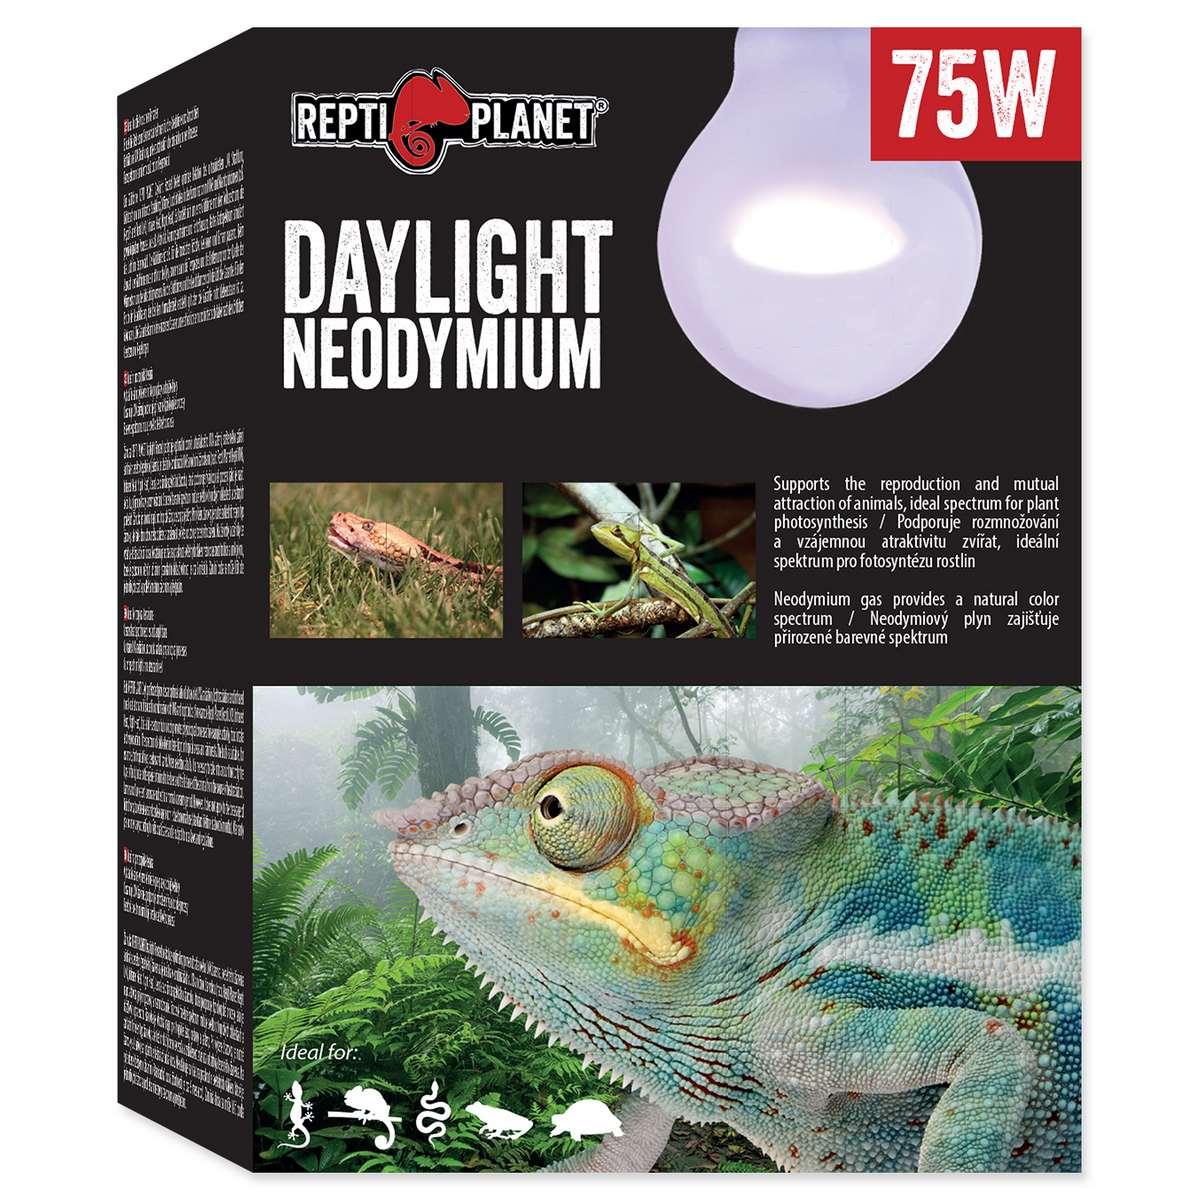 Repti Planet Daylight Neodymium 75 W 007-41013